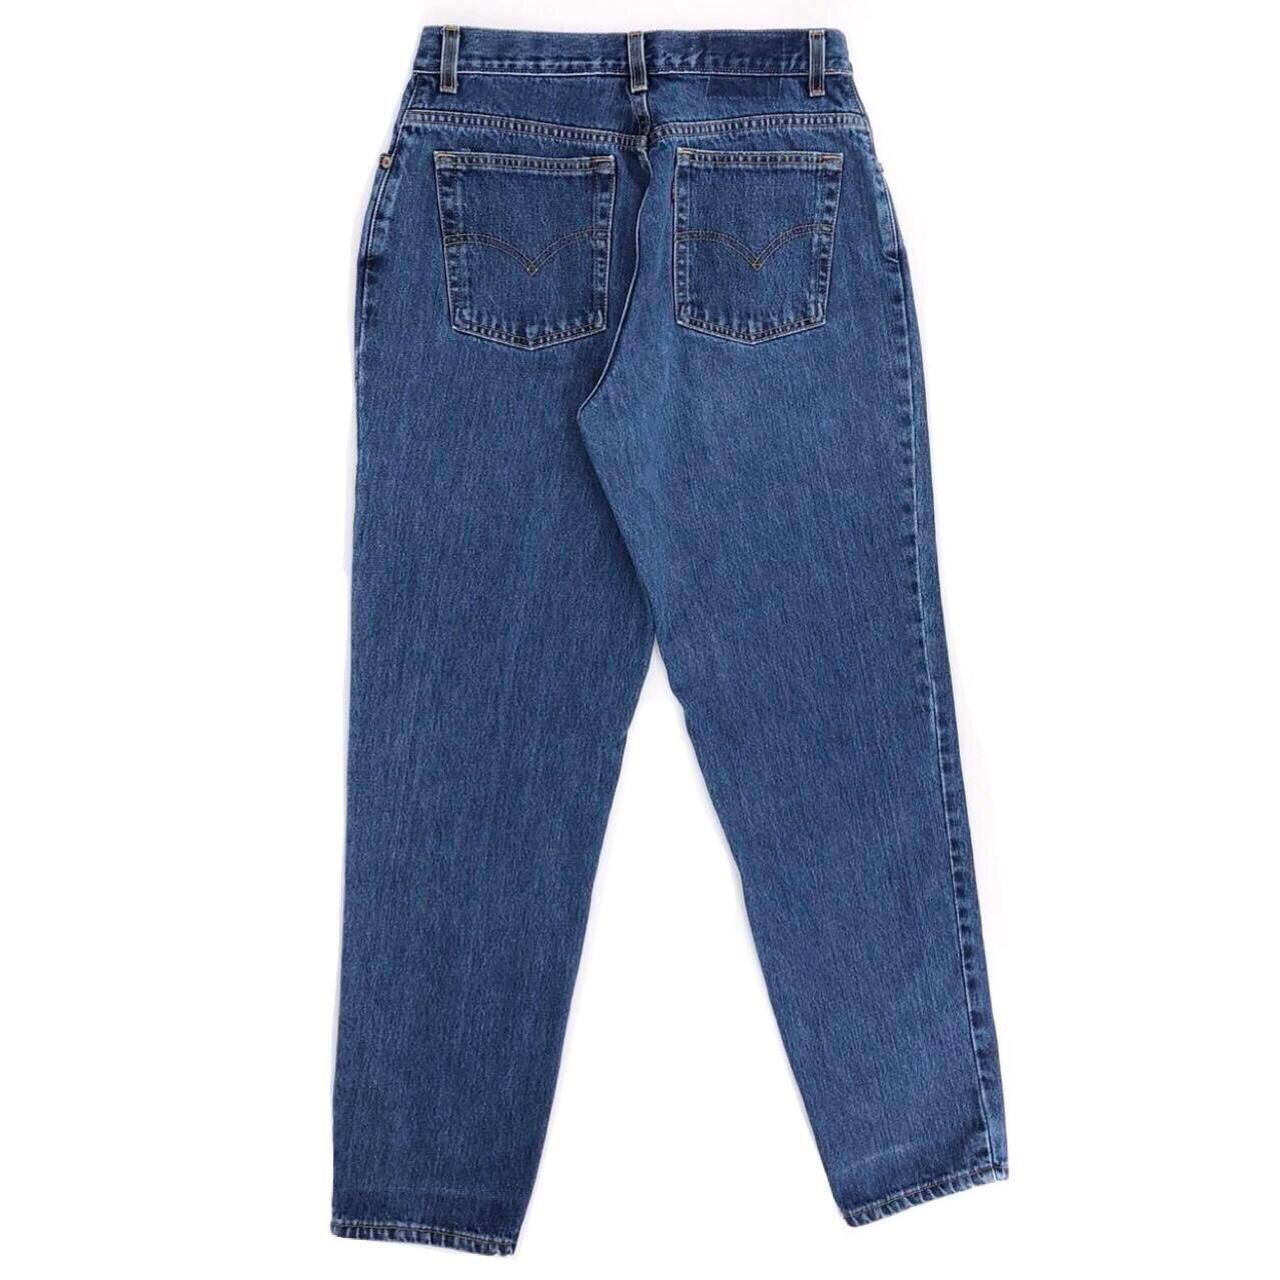 90svLevi’s 550 relaxed fit jeans 1990s vintage... - Depop